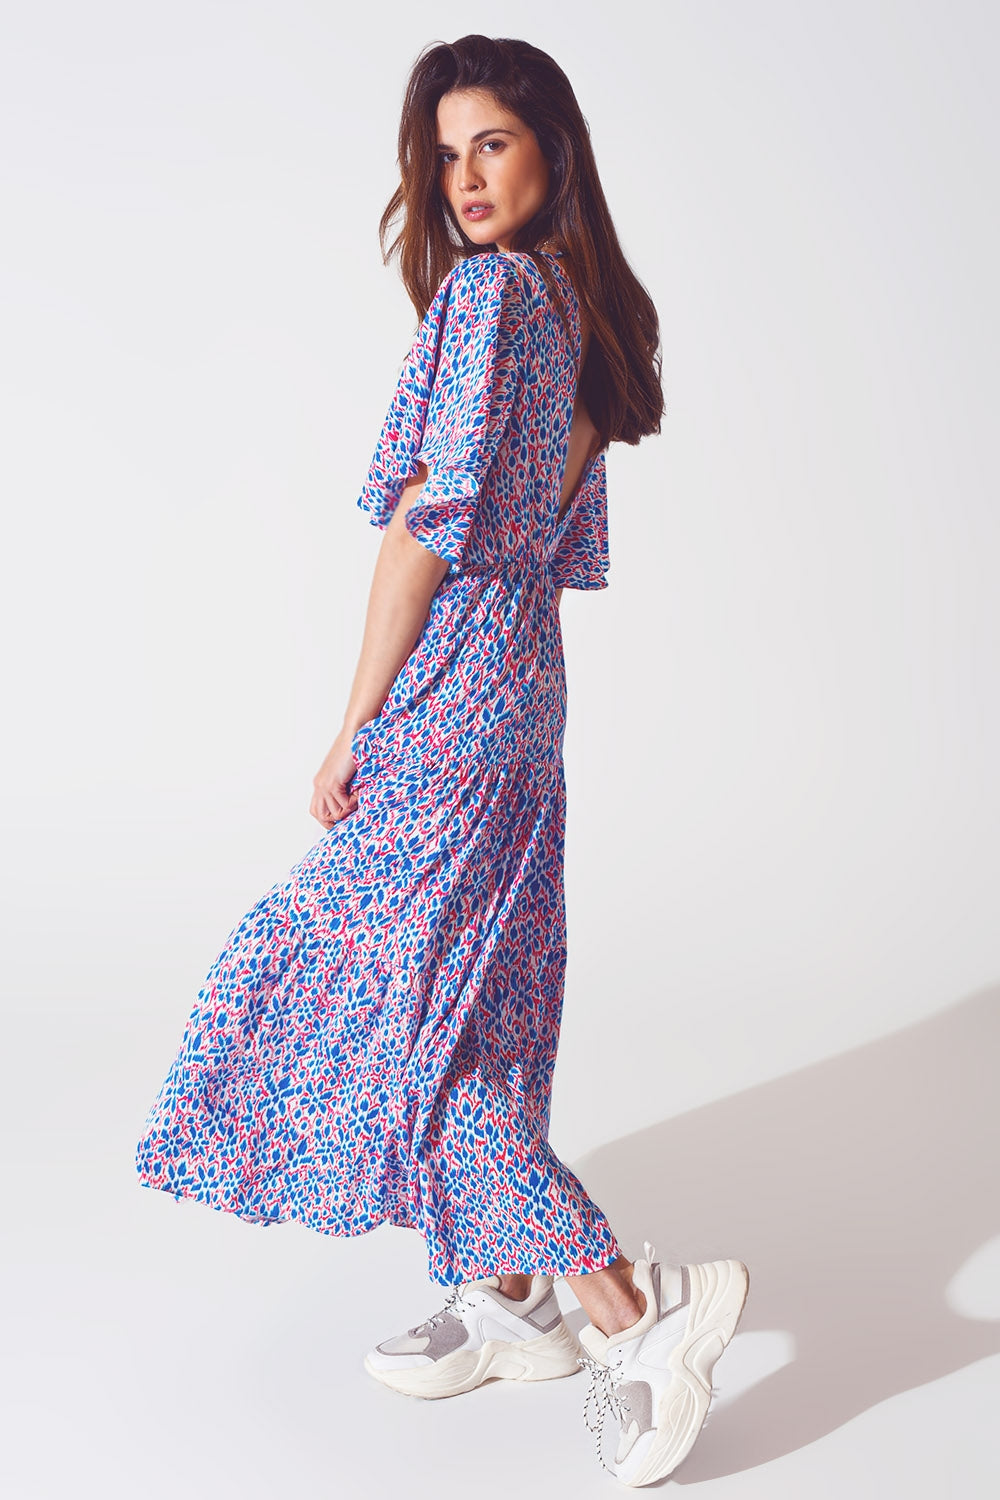 Full Length Dress With Open Tie back in Purple Print - Szua Store